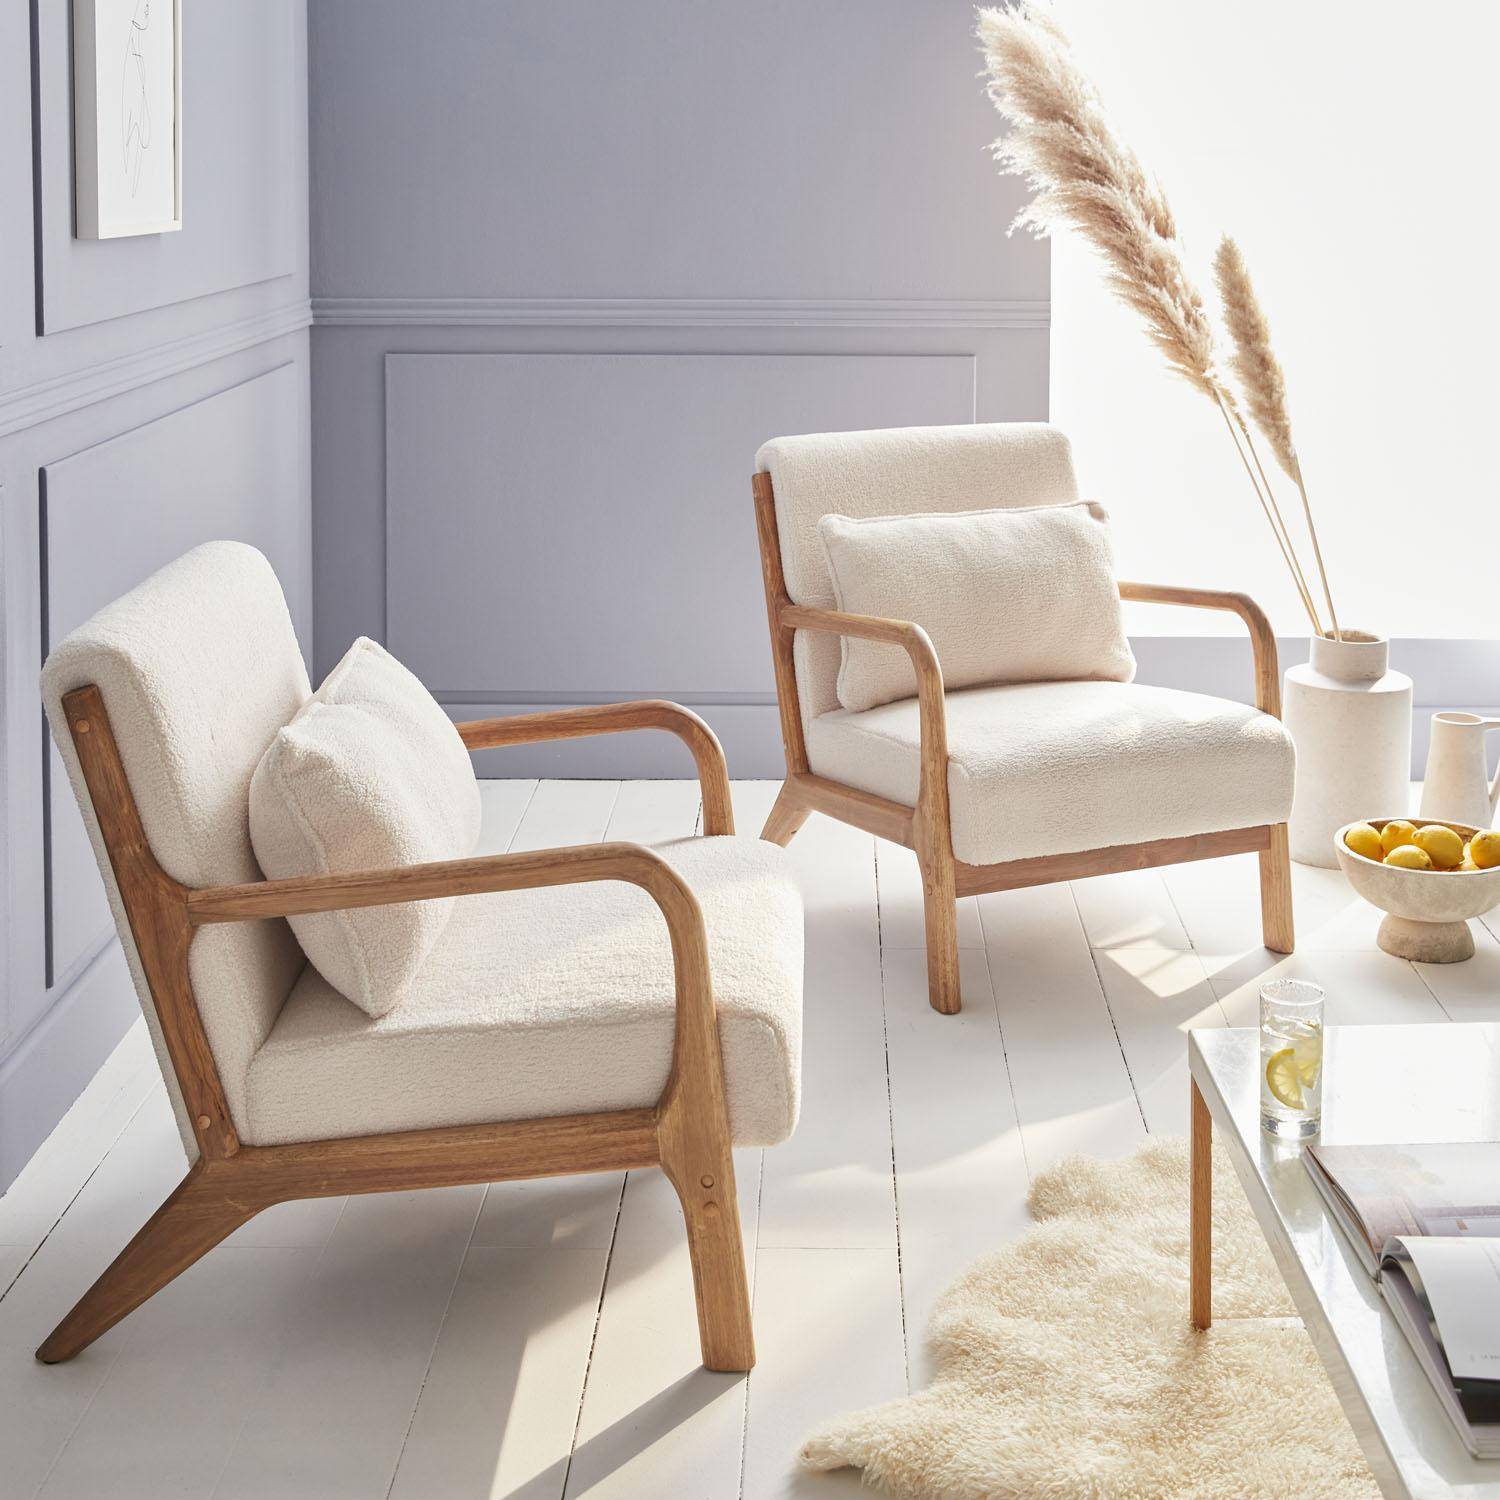 Sillón de rizos blancos, madera y tela, 1 asiento recto fijo, patas de compás escandinavas, armazón de madera maciza, asiento cómodo Photo2